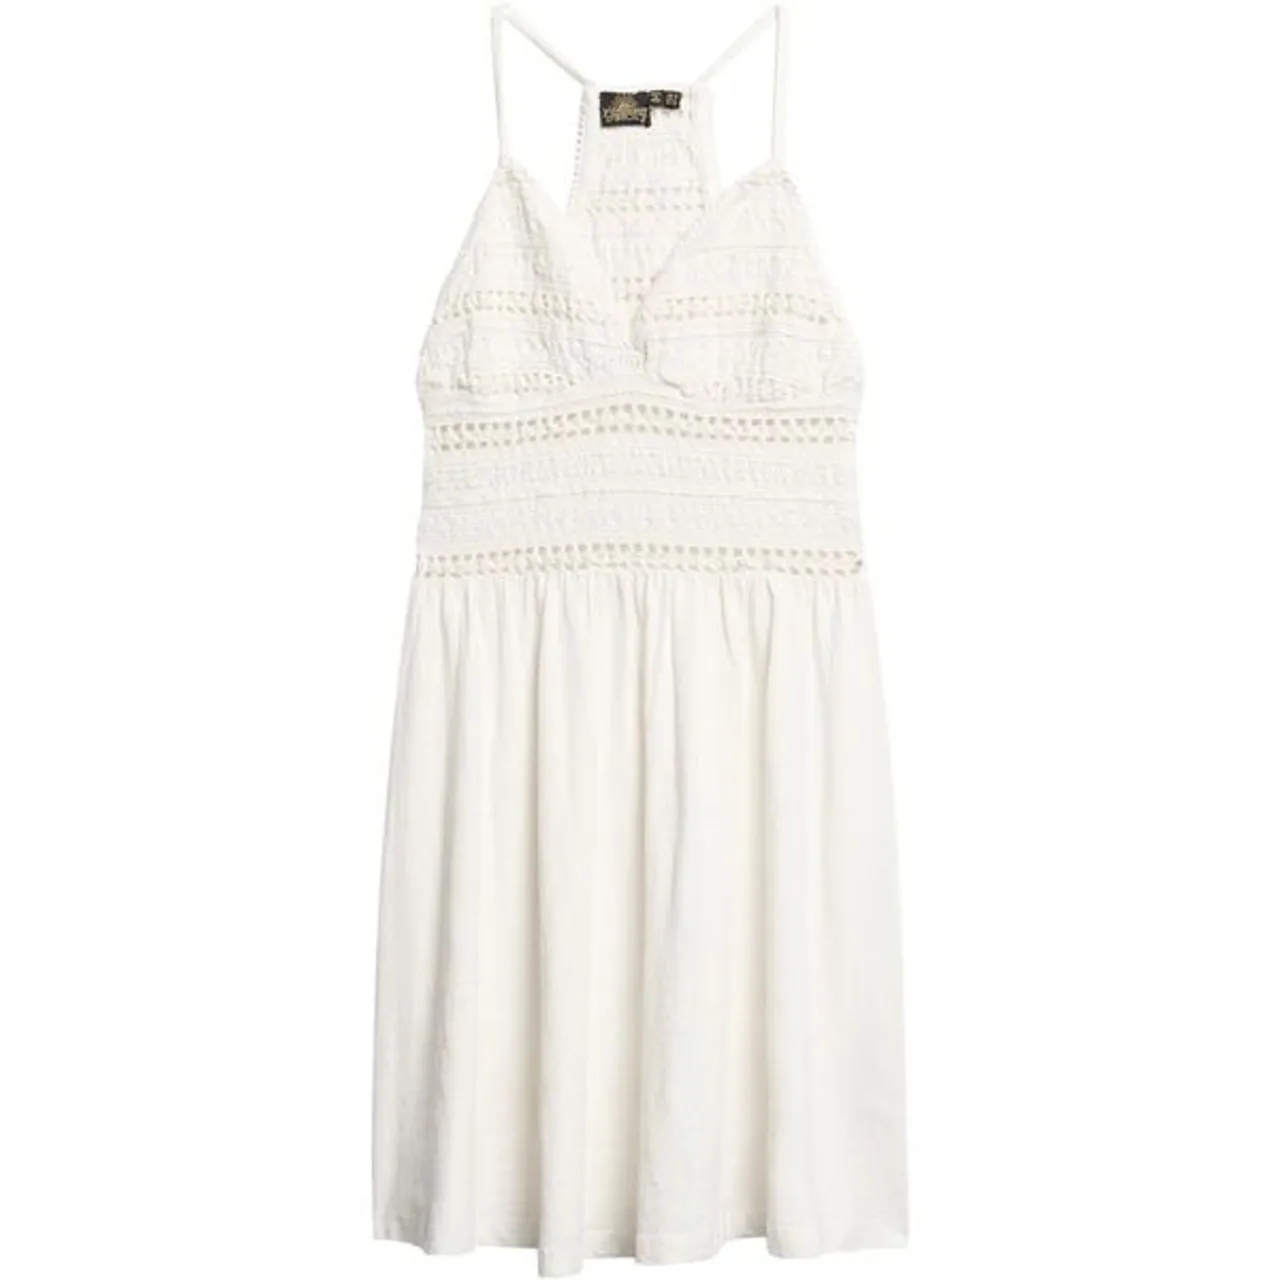 Jerseykleid SUPERDRY "JERSEY LACE MINI DRESS" Gr. S, N-Gr, weiß (off white) Damen Kleider Freizeitkleider